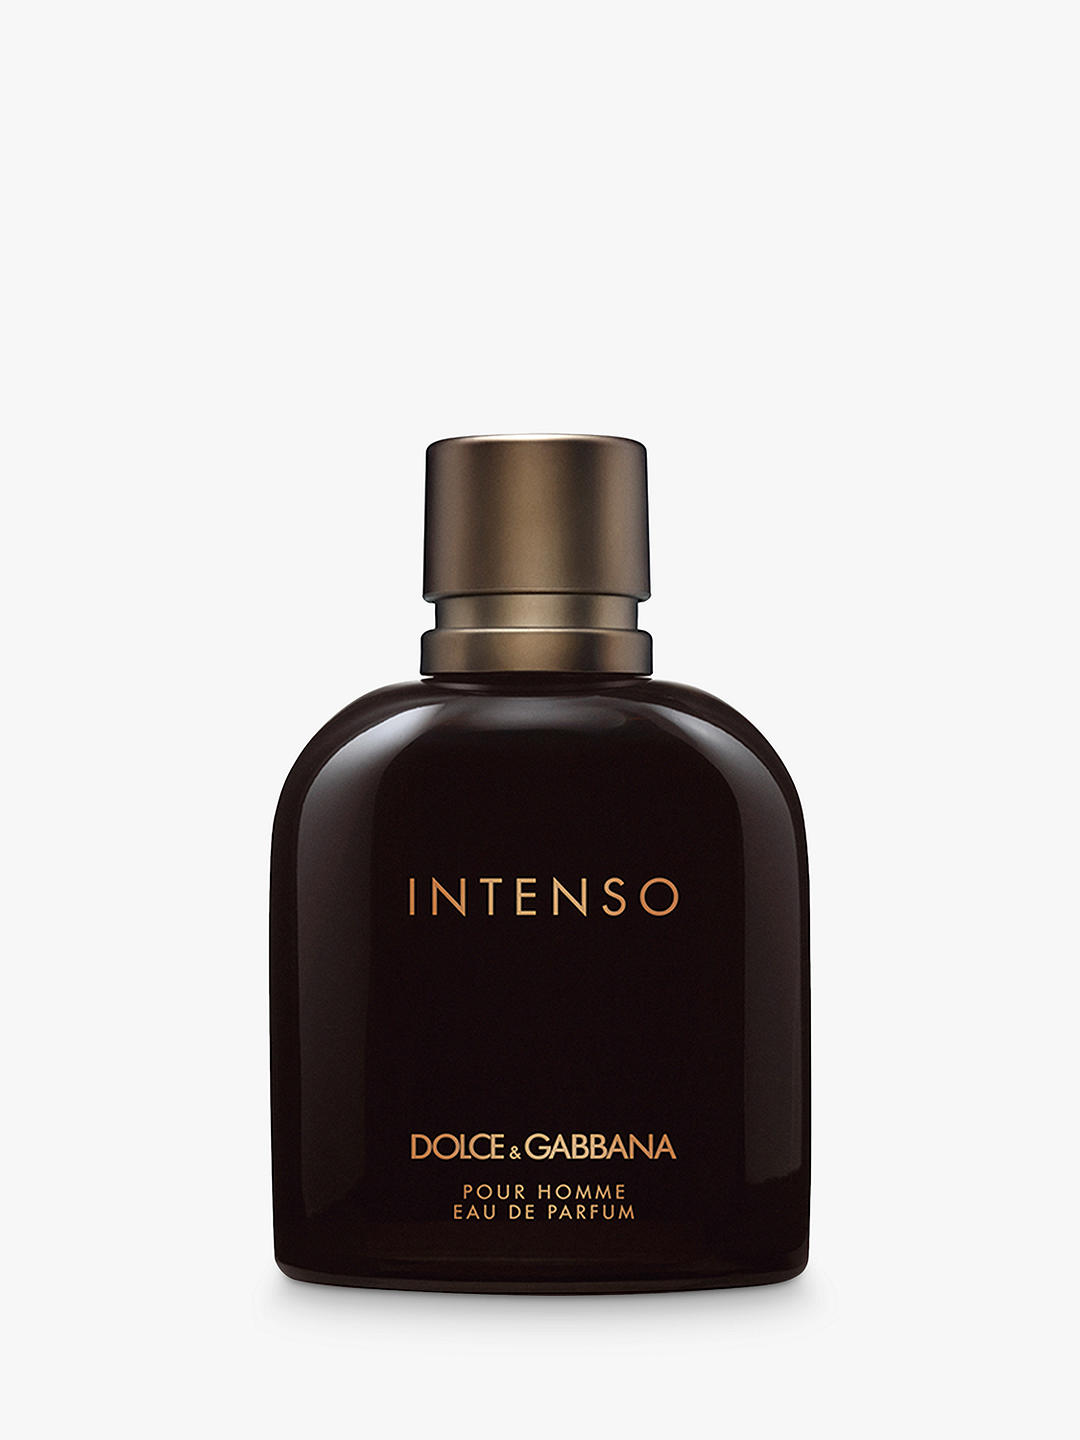 Dolce & Gabbana Intenso Pour Homme Eau de Parfum, 100ml 1